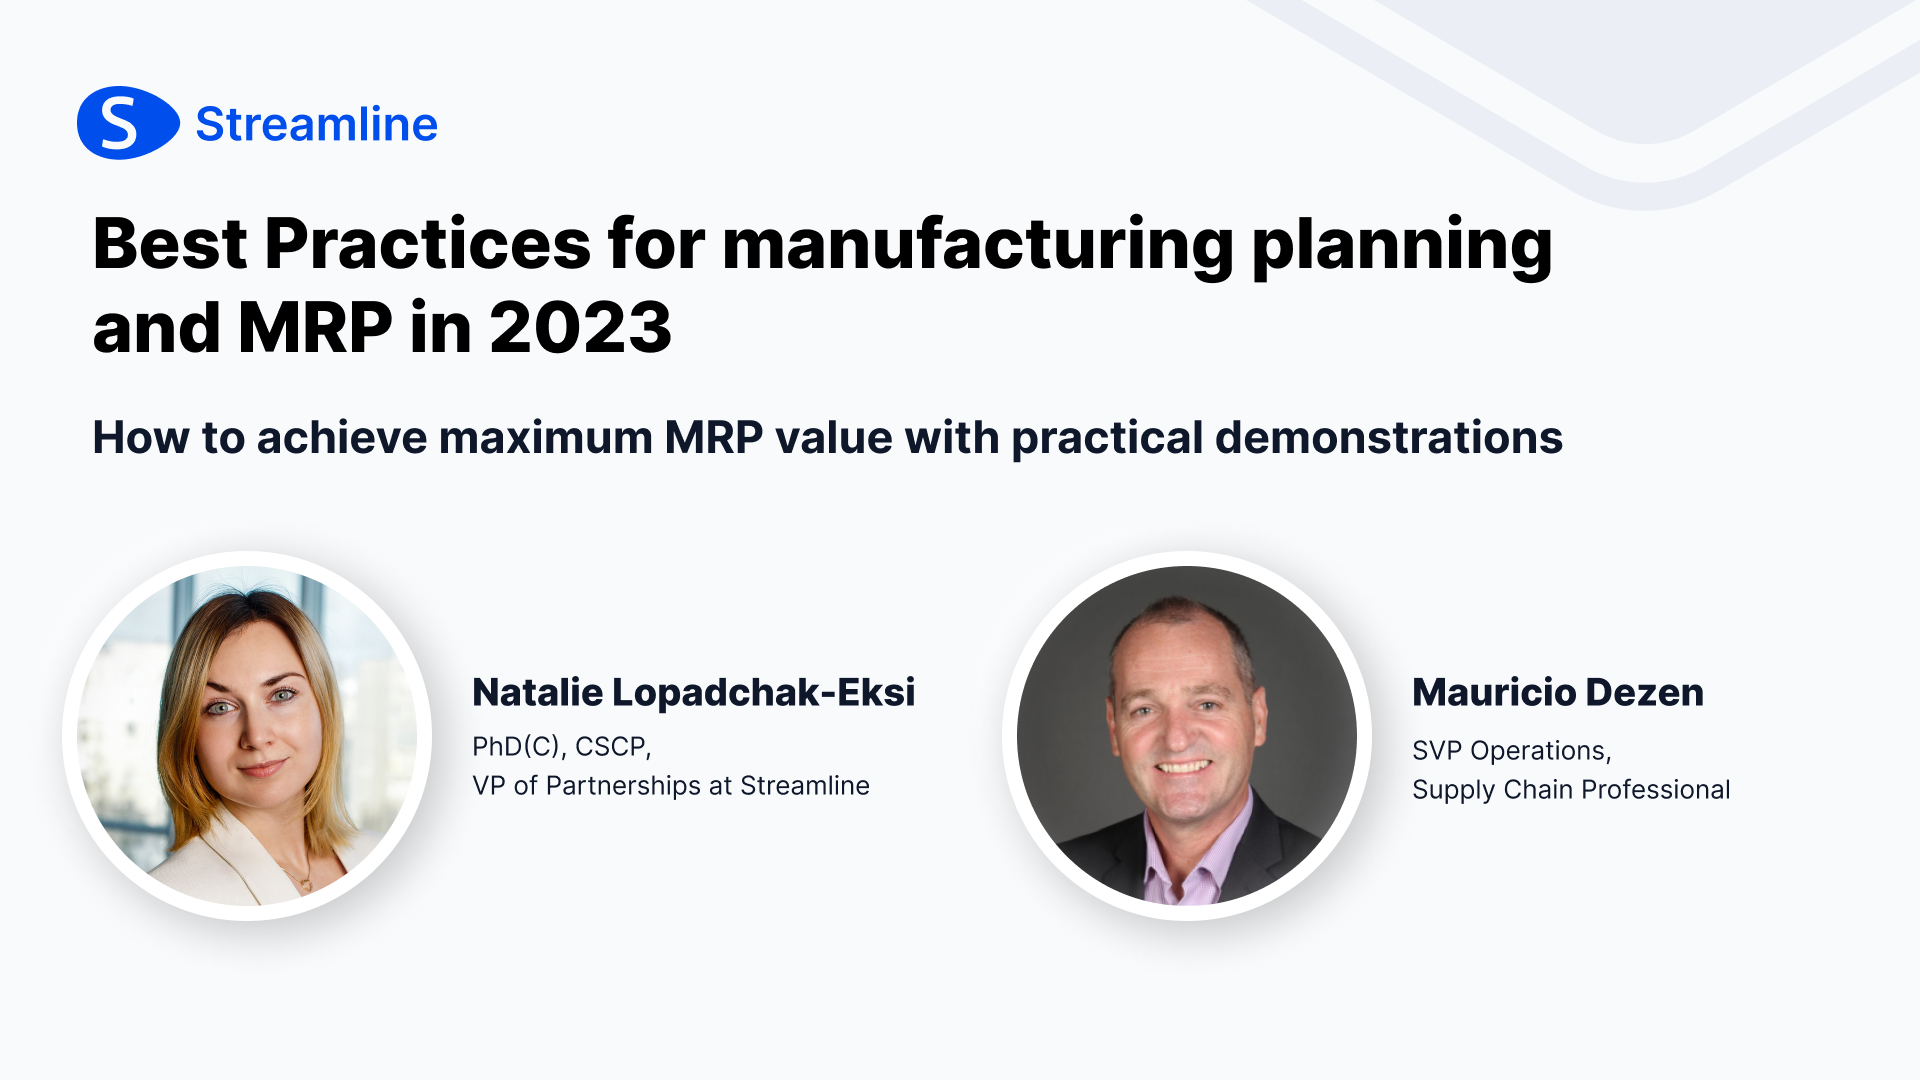 Найкращі практики для планування виробництва та MRP у 2023 році